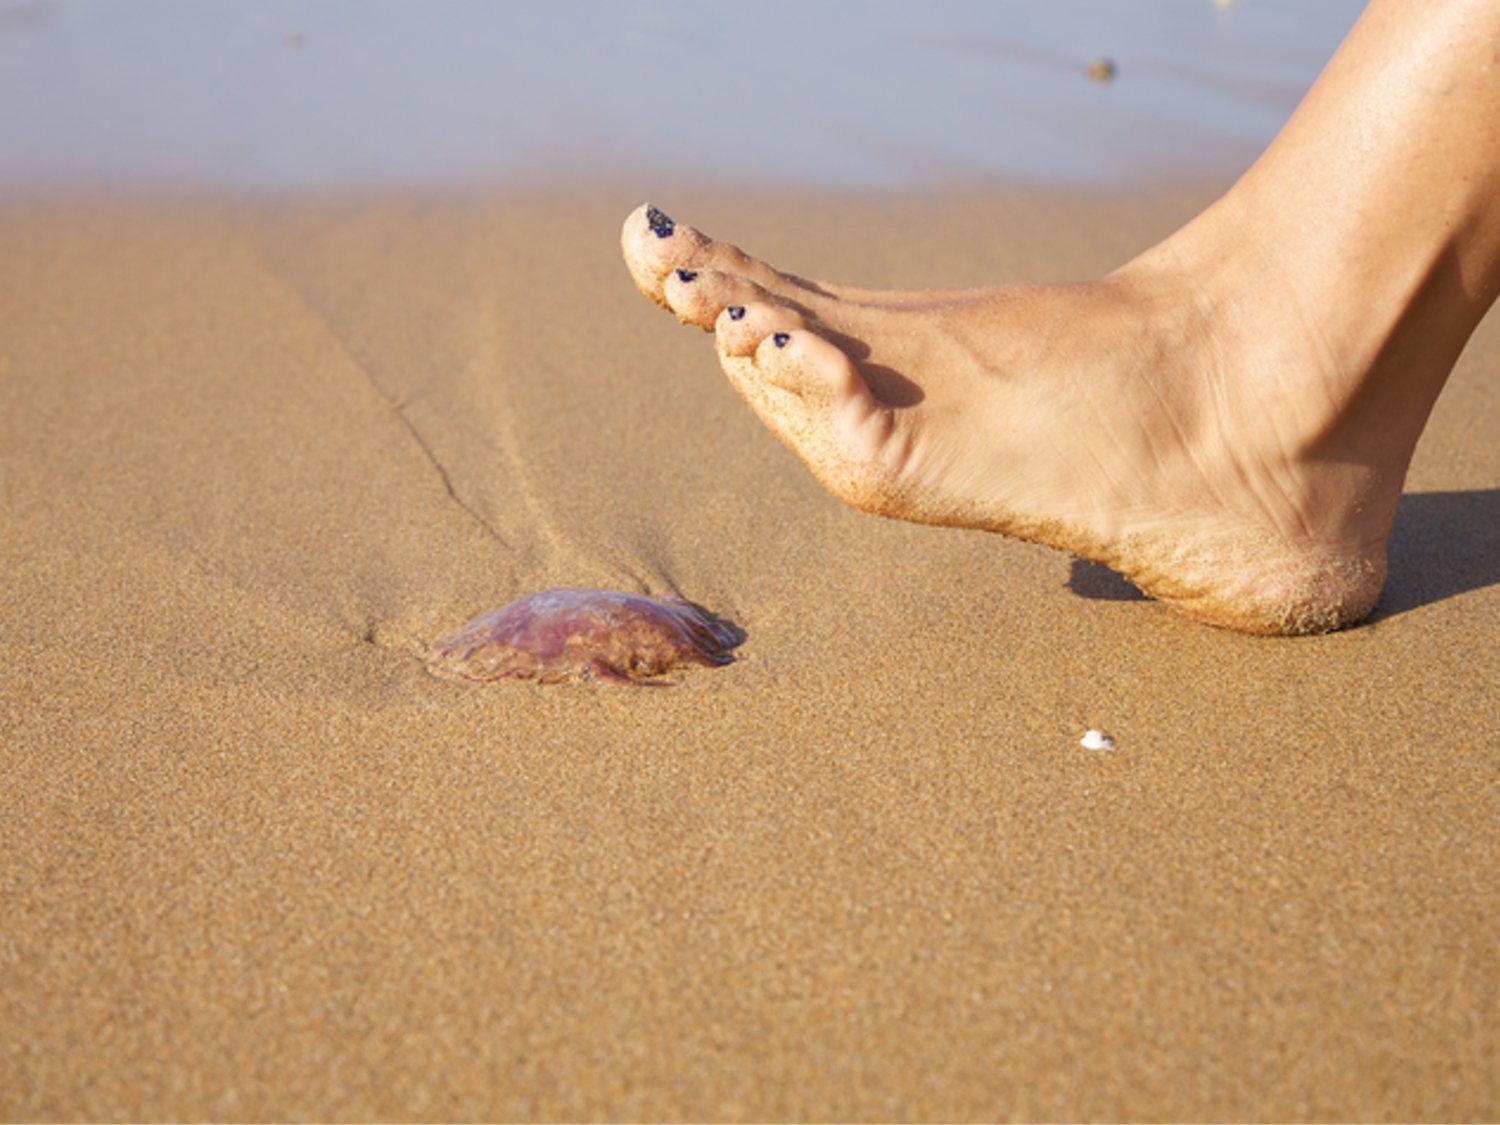 Vinagre contra las picaduras de medusa: ¿Verdad o mito?